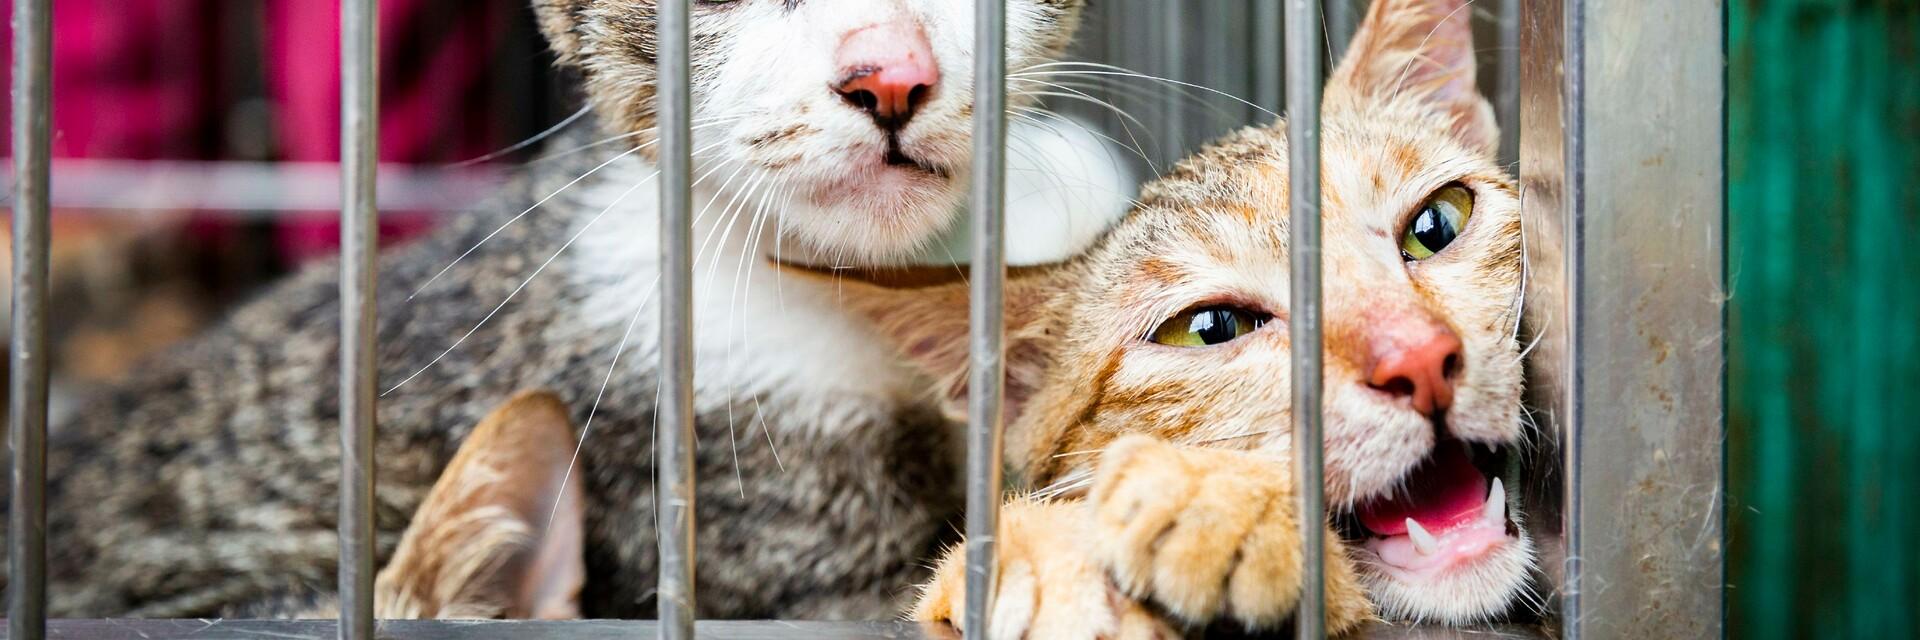 Deux chats dans une cage destiné à être consommés